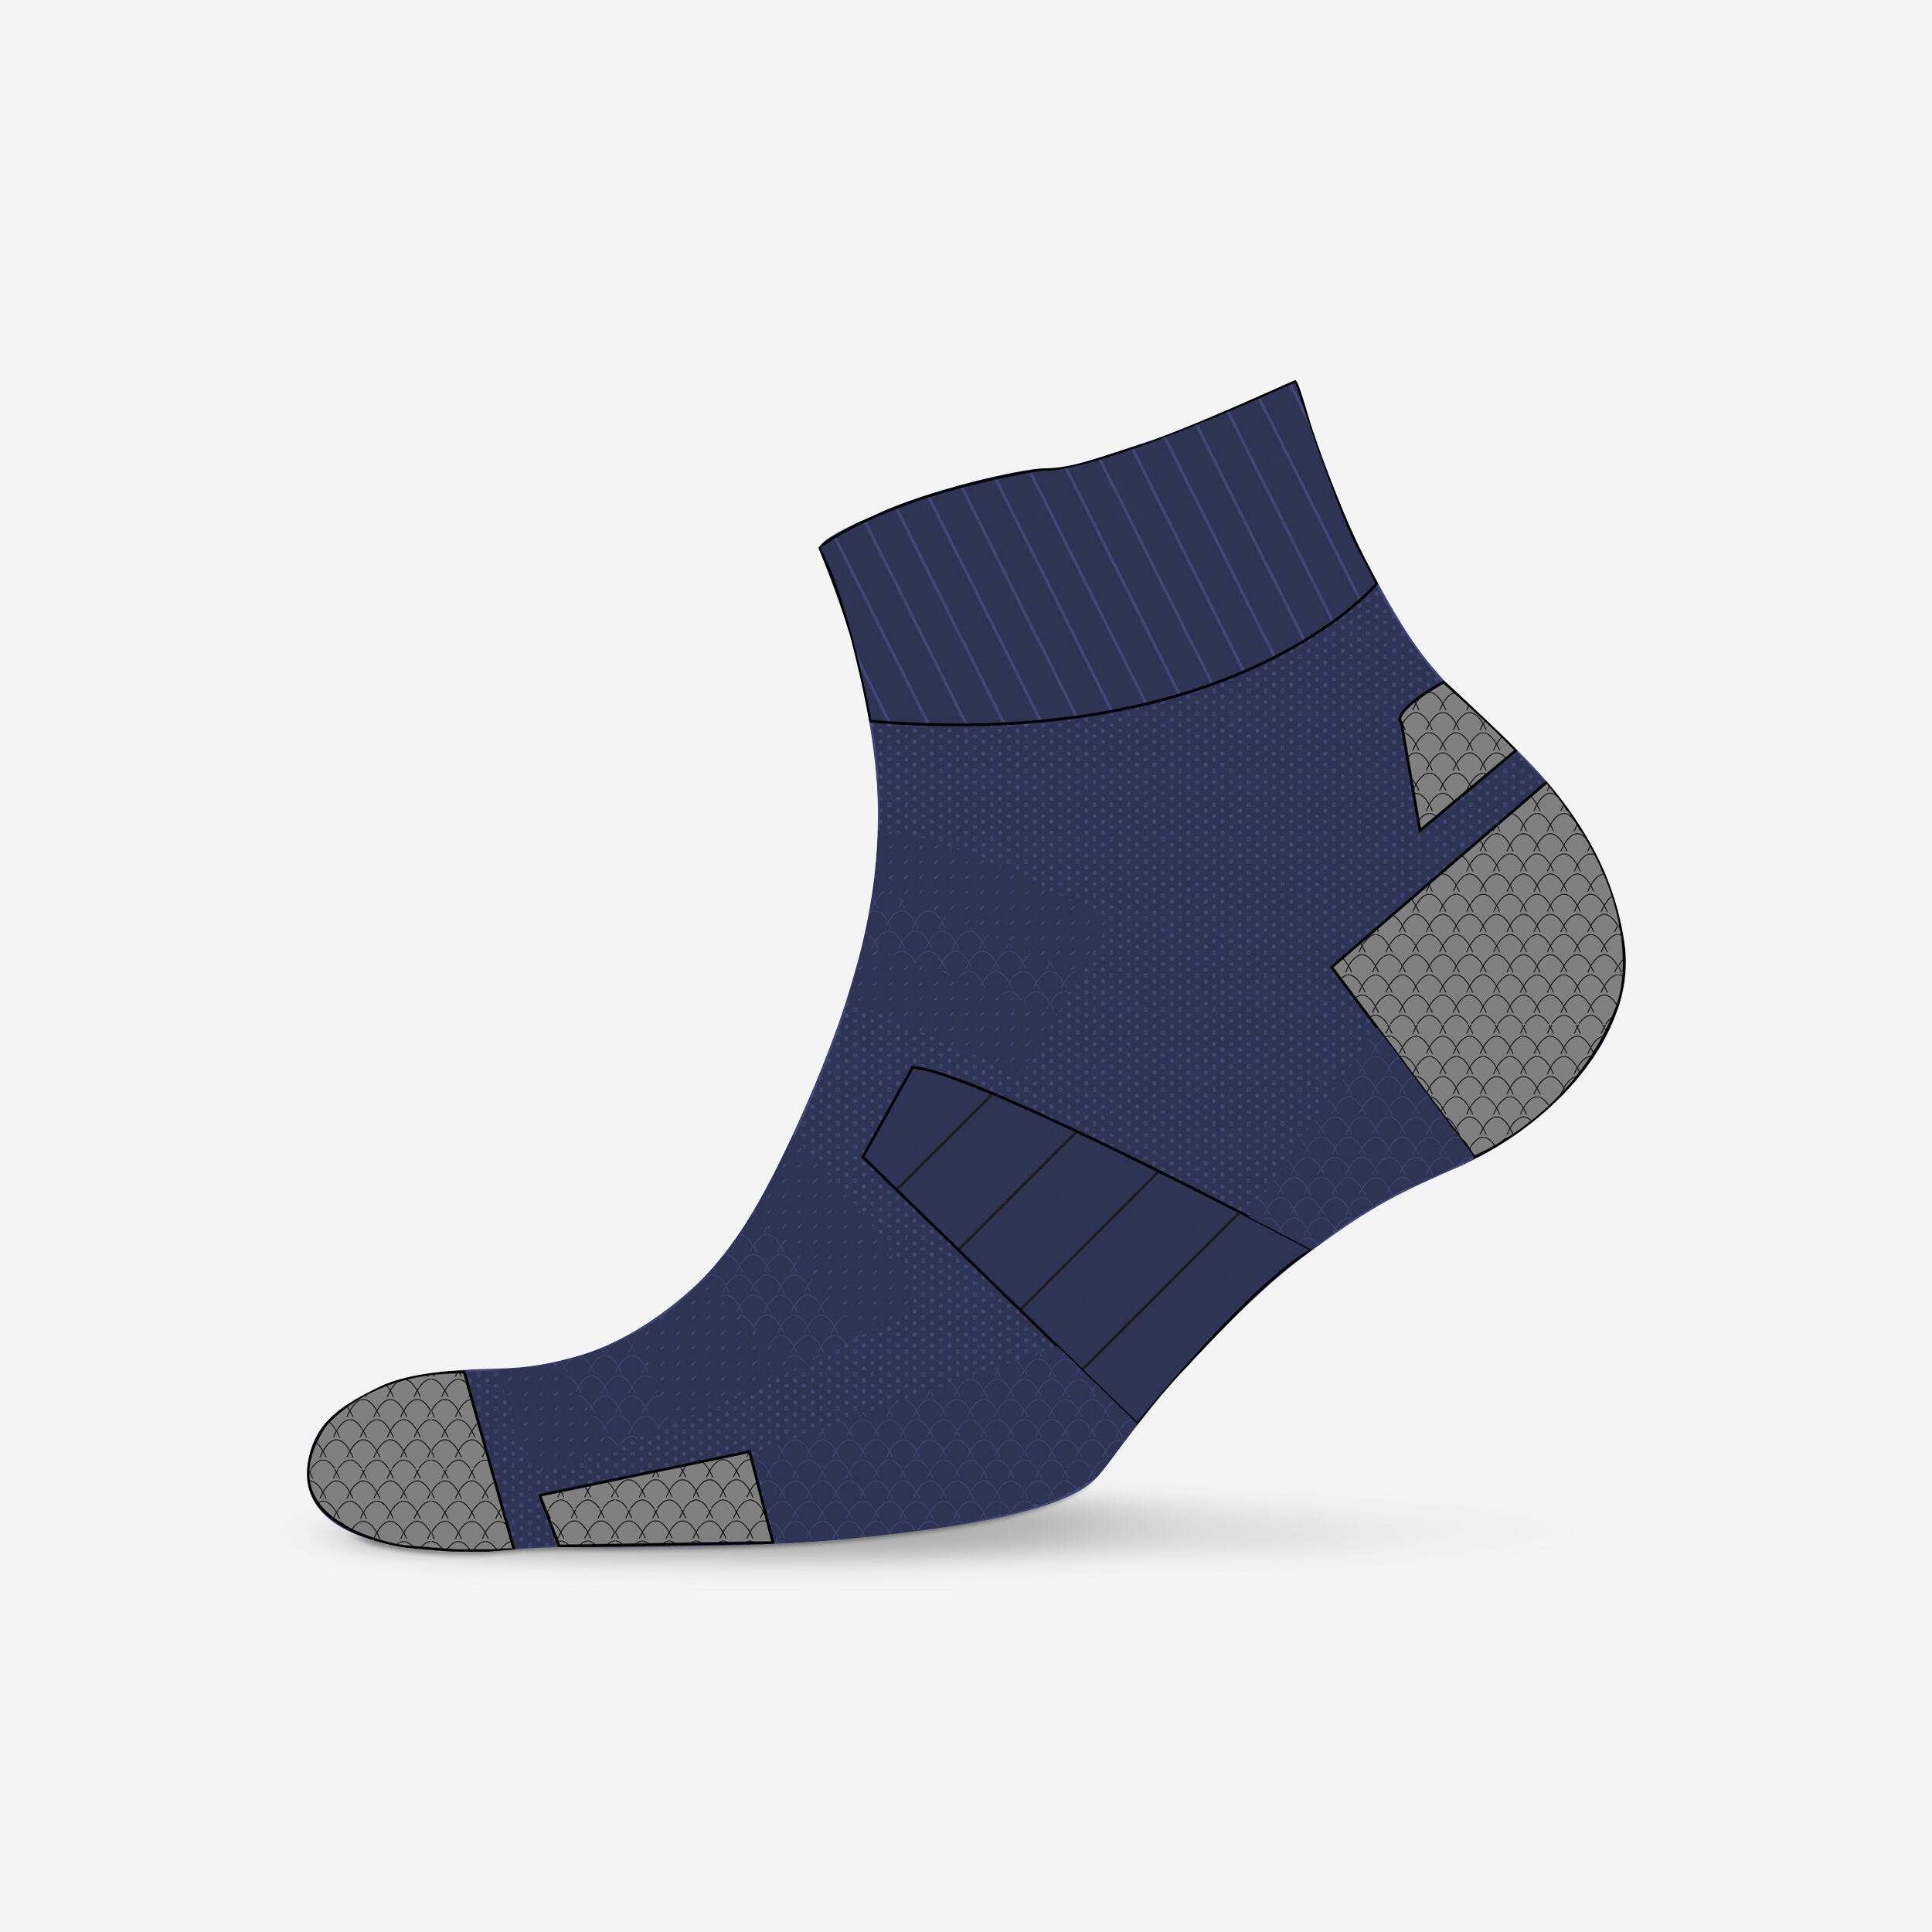 Mid-Calf Running Socks - Run 900 Merino Wool Navy - Navy blue